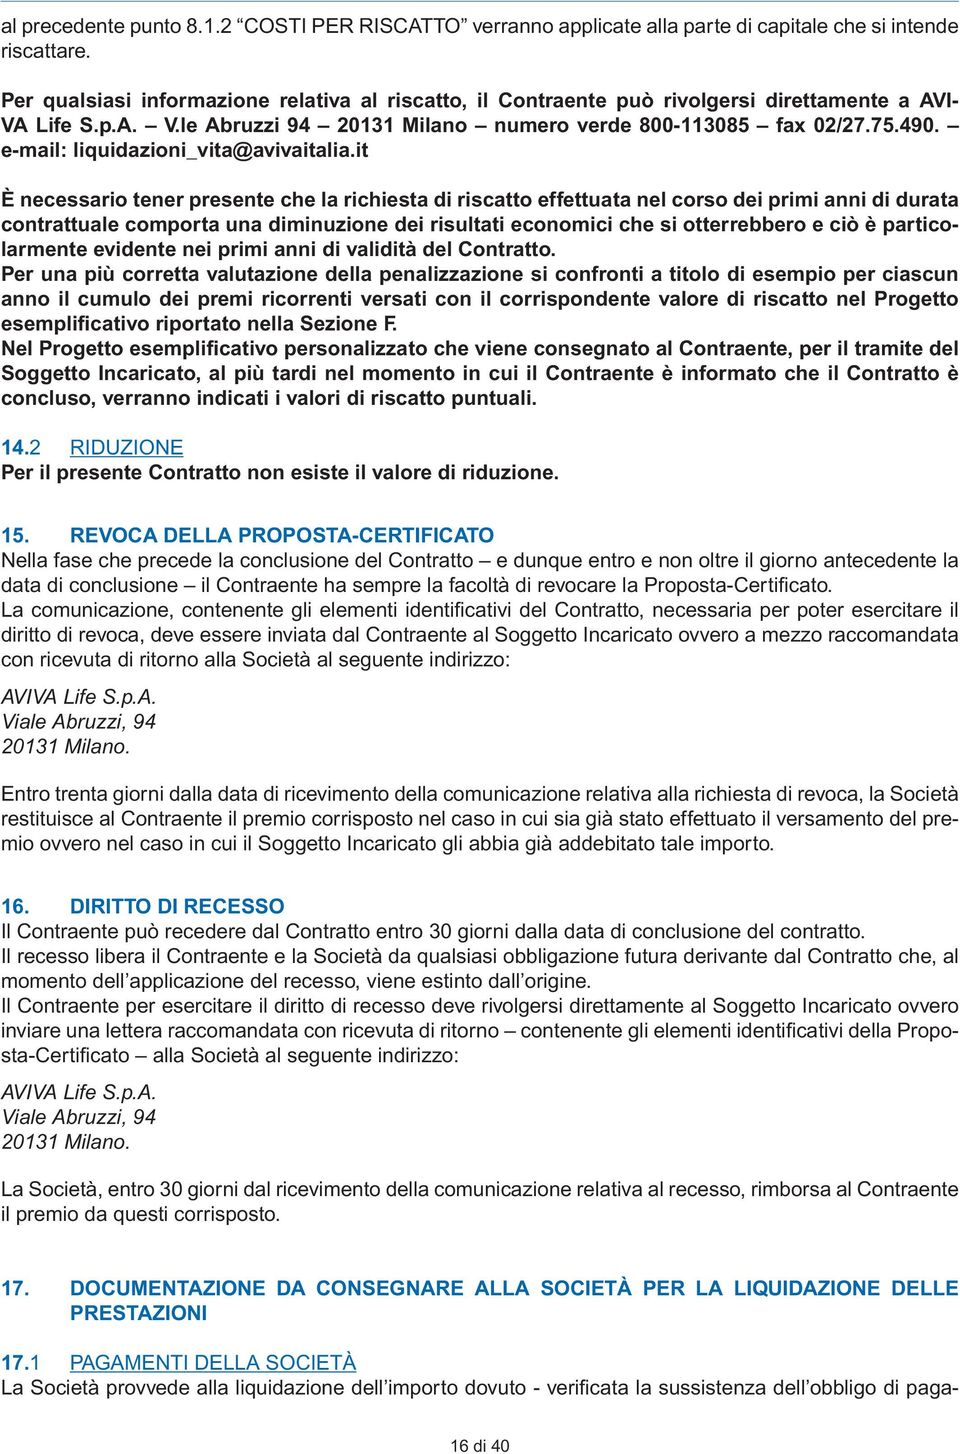 e-mail: liquidazioni_vita@avivaitalia.